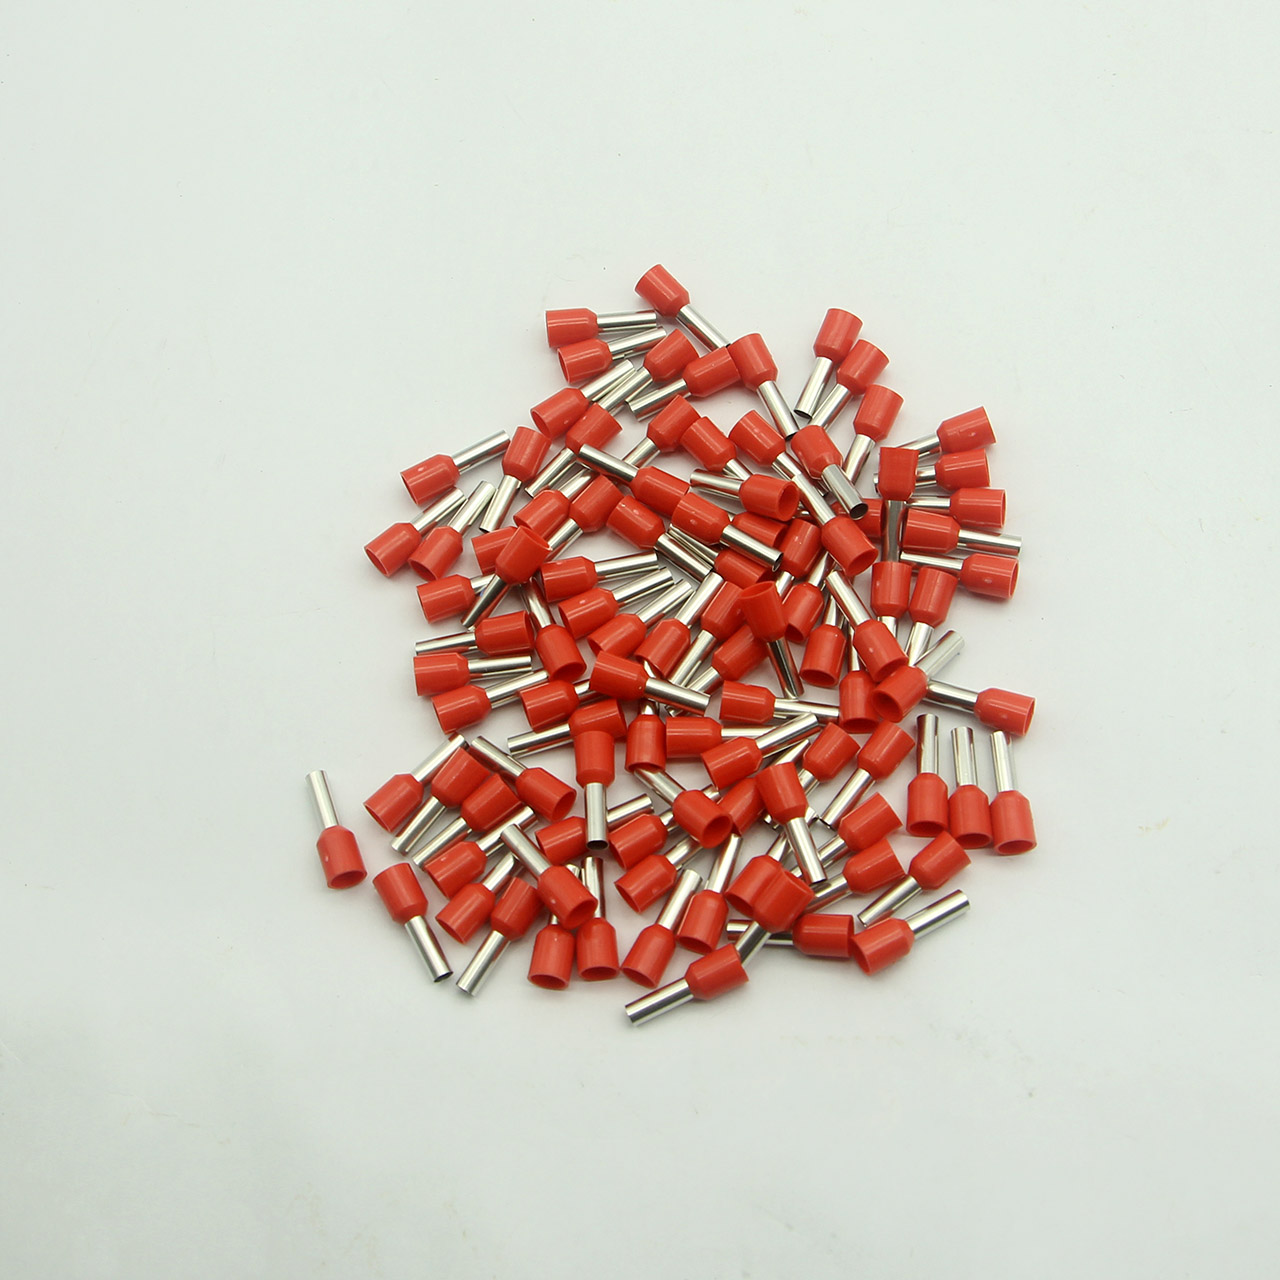 Túi 100 đầu cos pin rỗng E4009 bọc nhựa đỏ